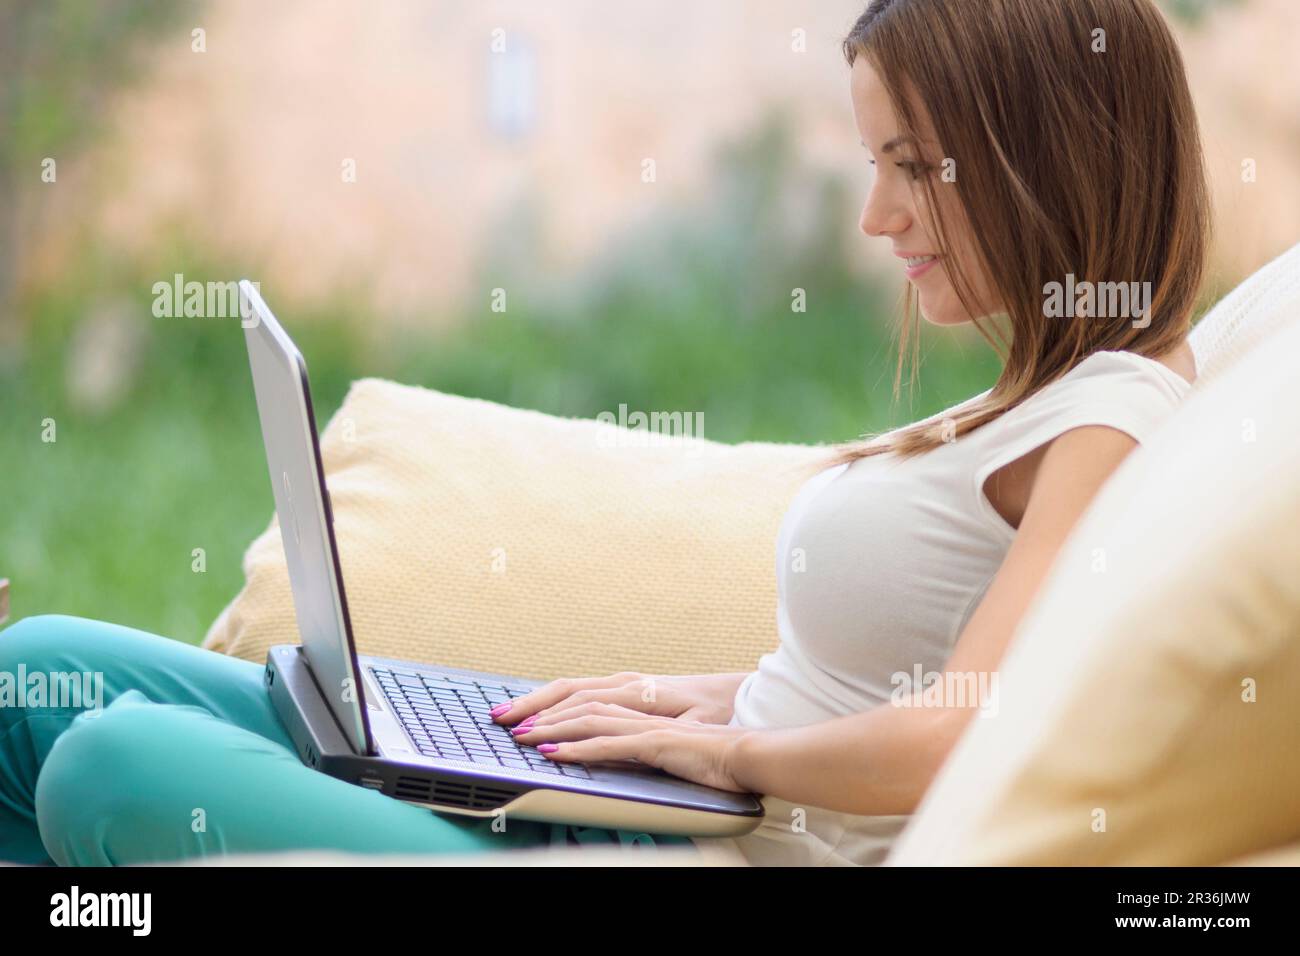 mujer joven escribiendo en un ordenador portatil,islas baleares, Spain. Stock Photo